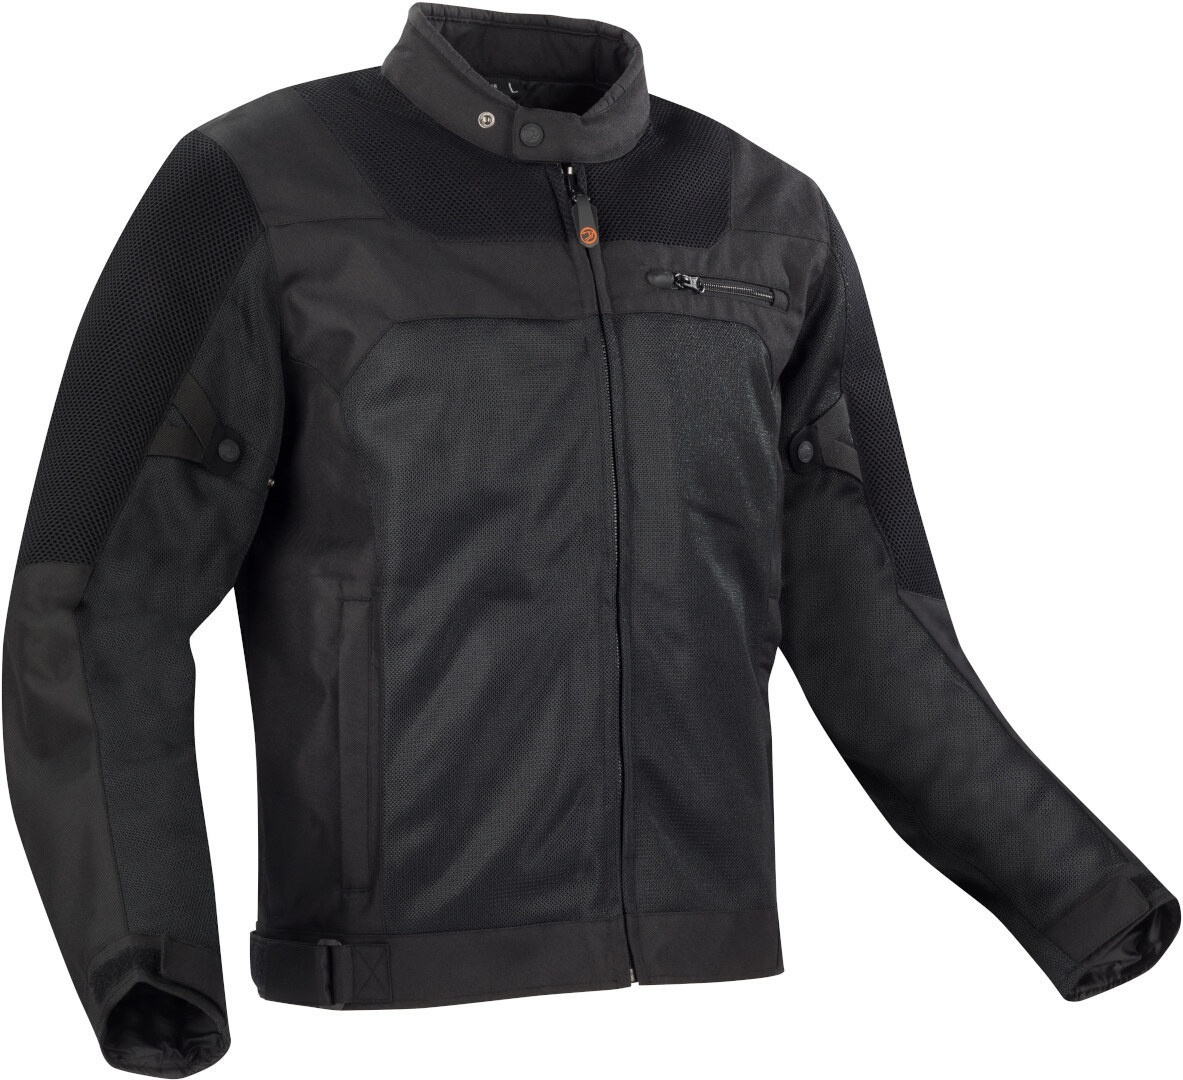 Bering Malibu Motorfiets textiel jas, zwart, M